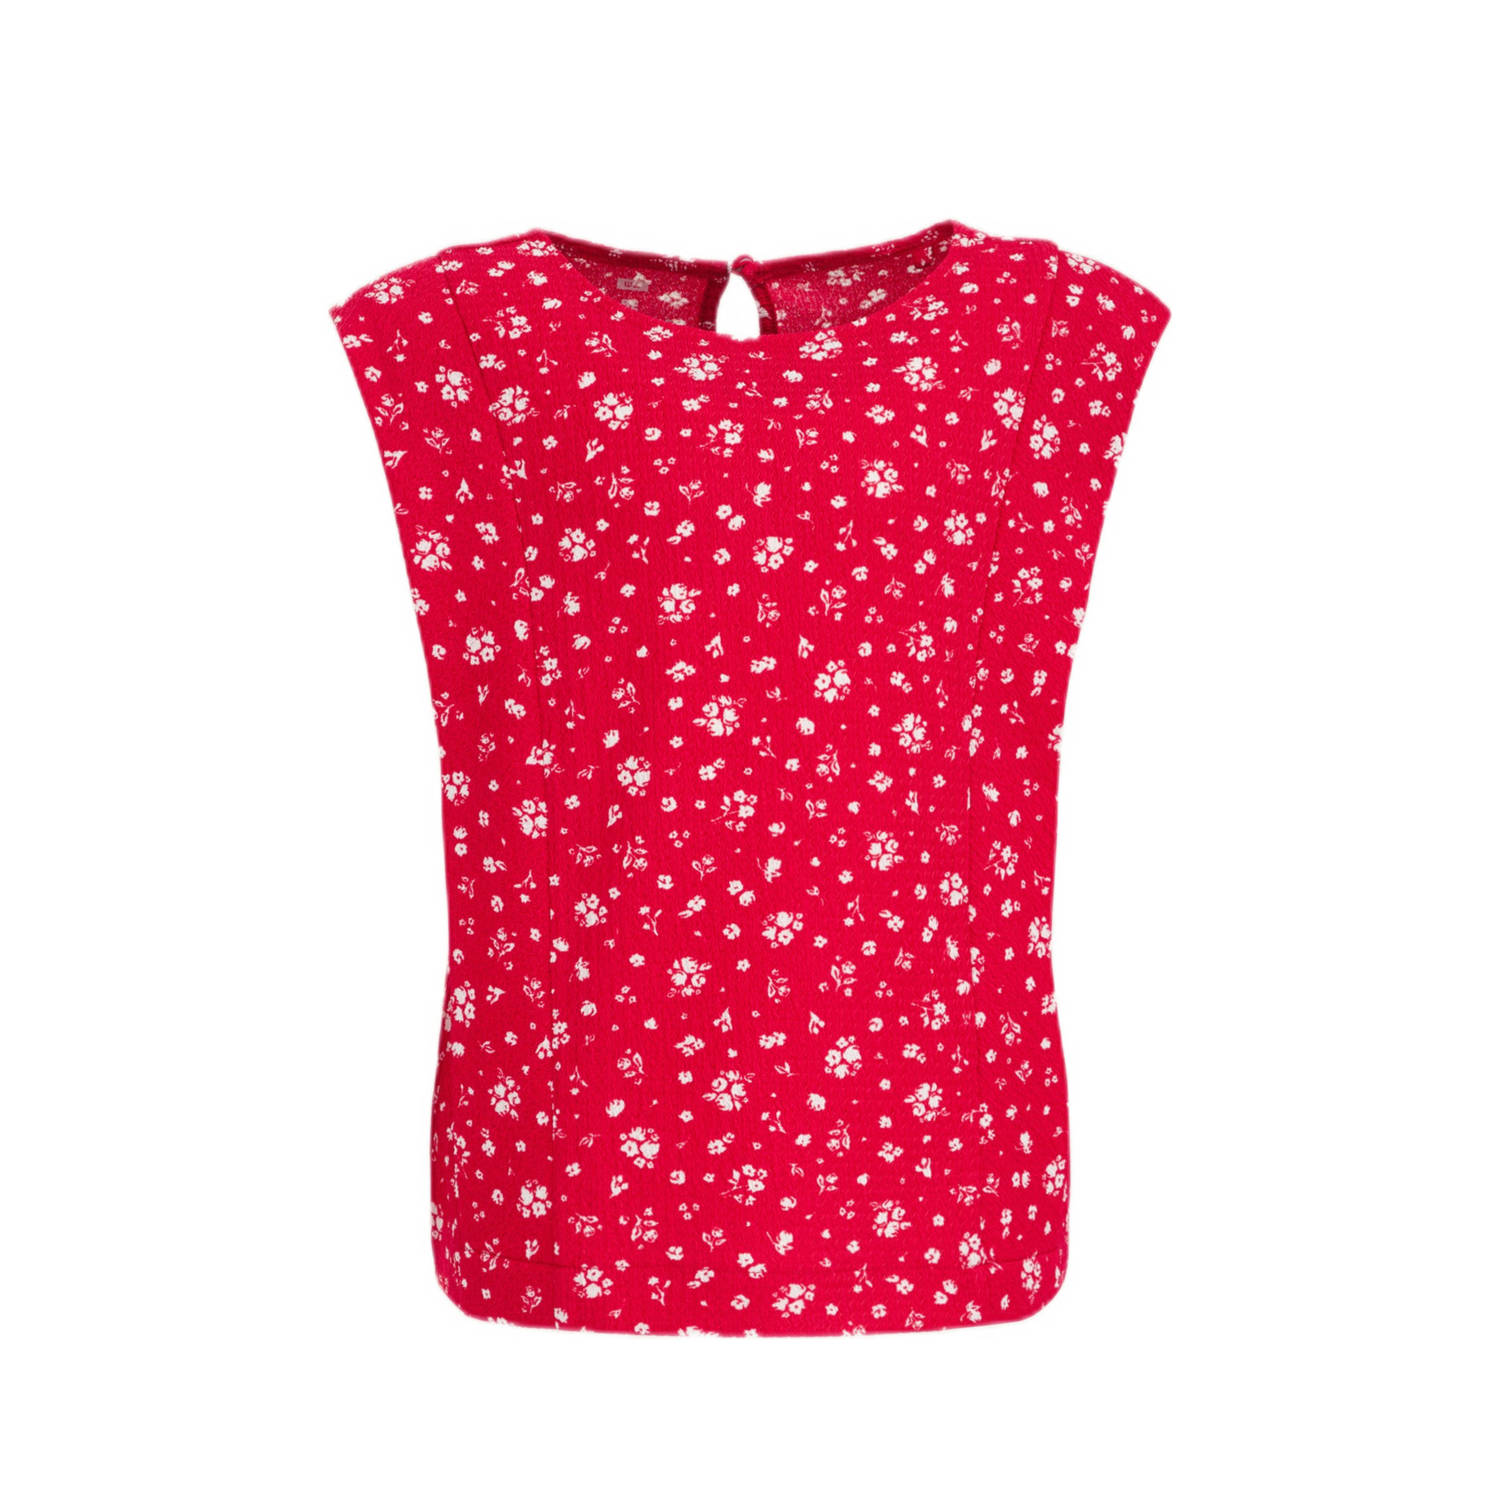 WE Fashion gebloemde top rood wit Meisjes Polyester Ronde hals Bloemen 146 152